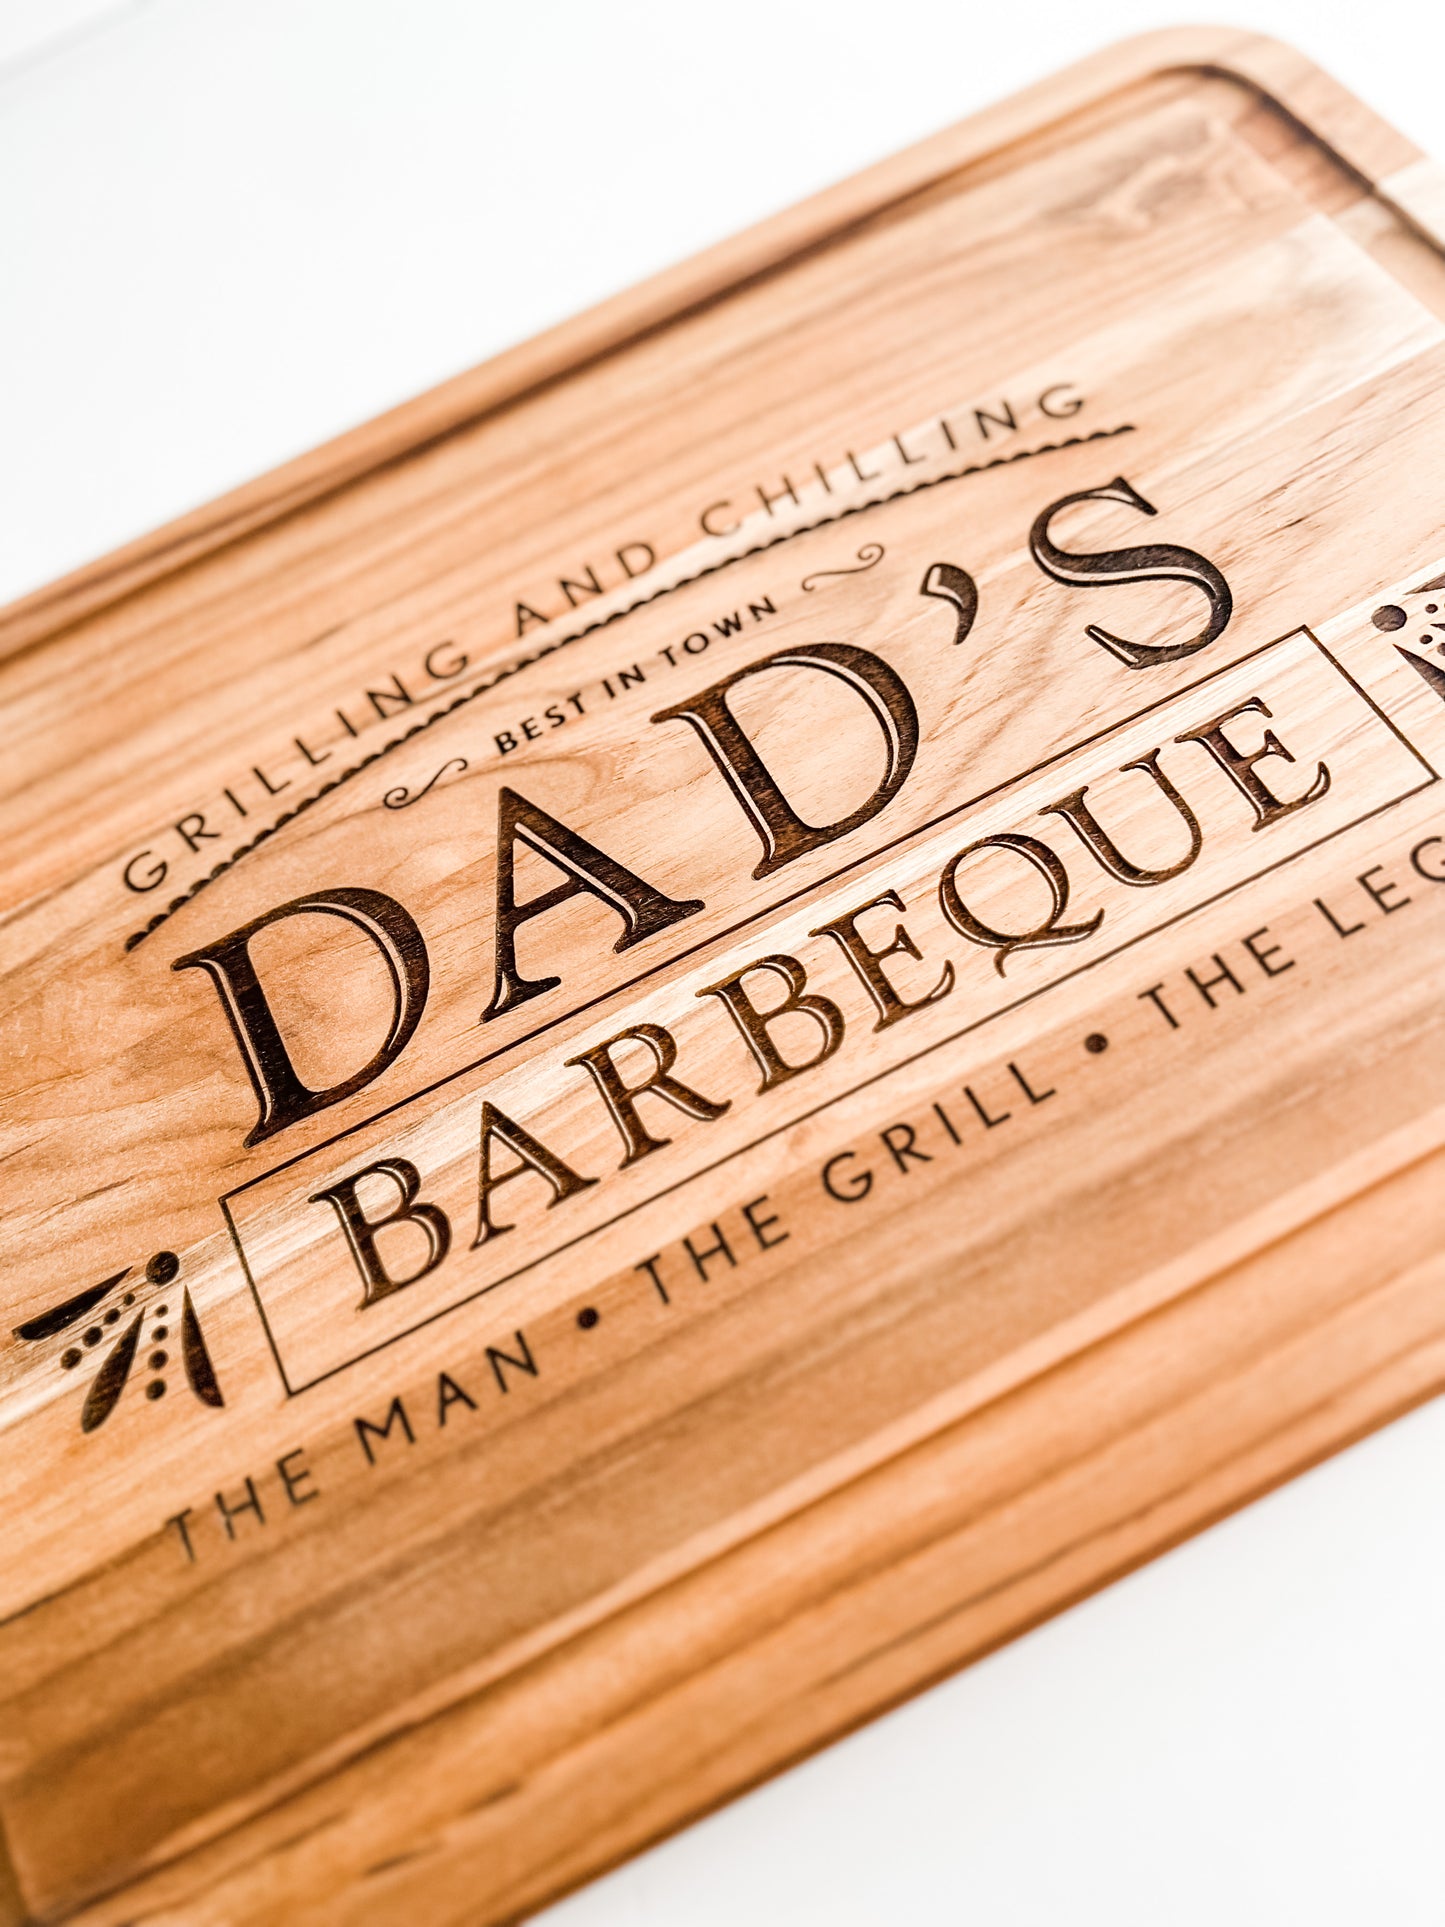 Dad's BBQ cutting board